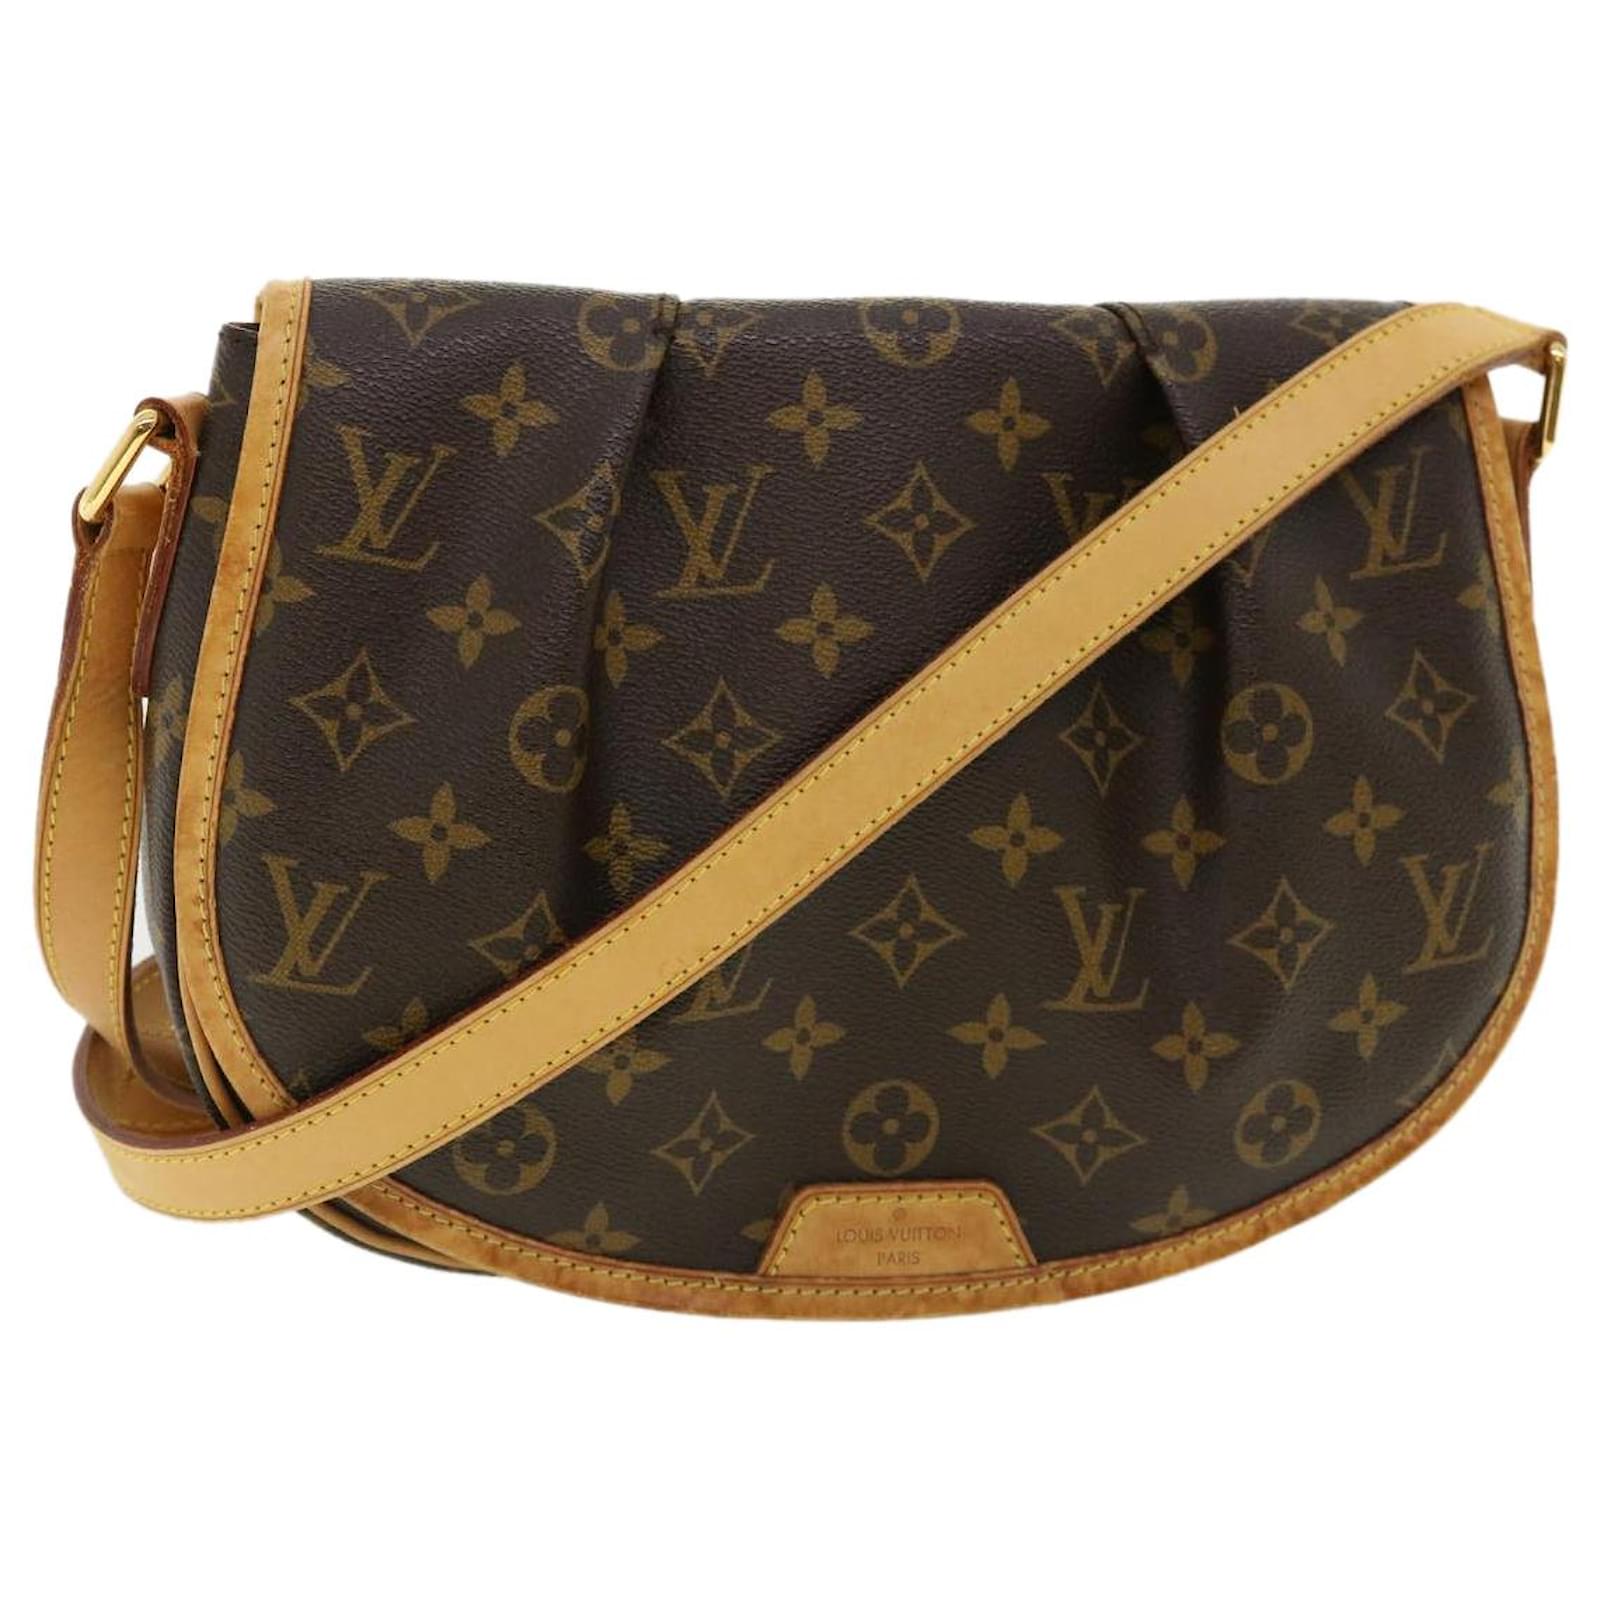 Louis Vuitton Menilmontant Monogram Bag